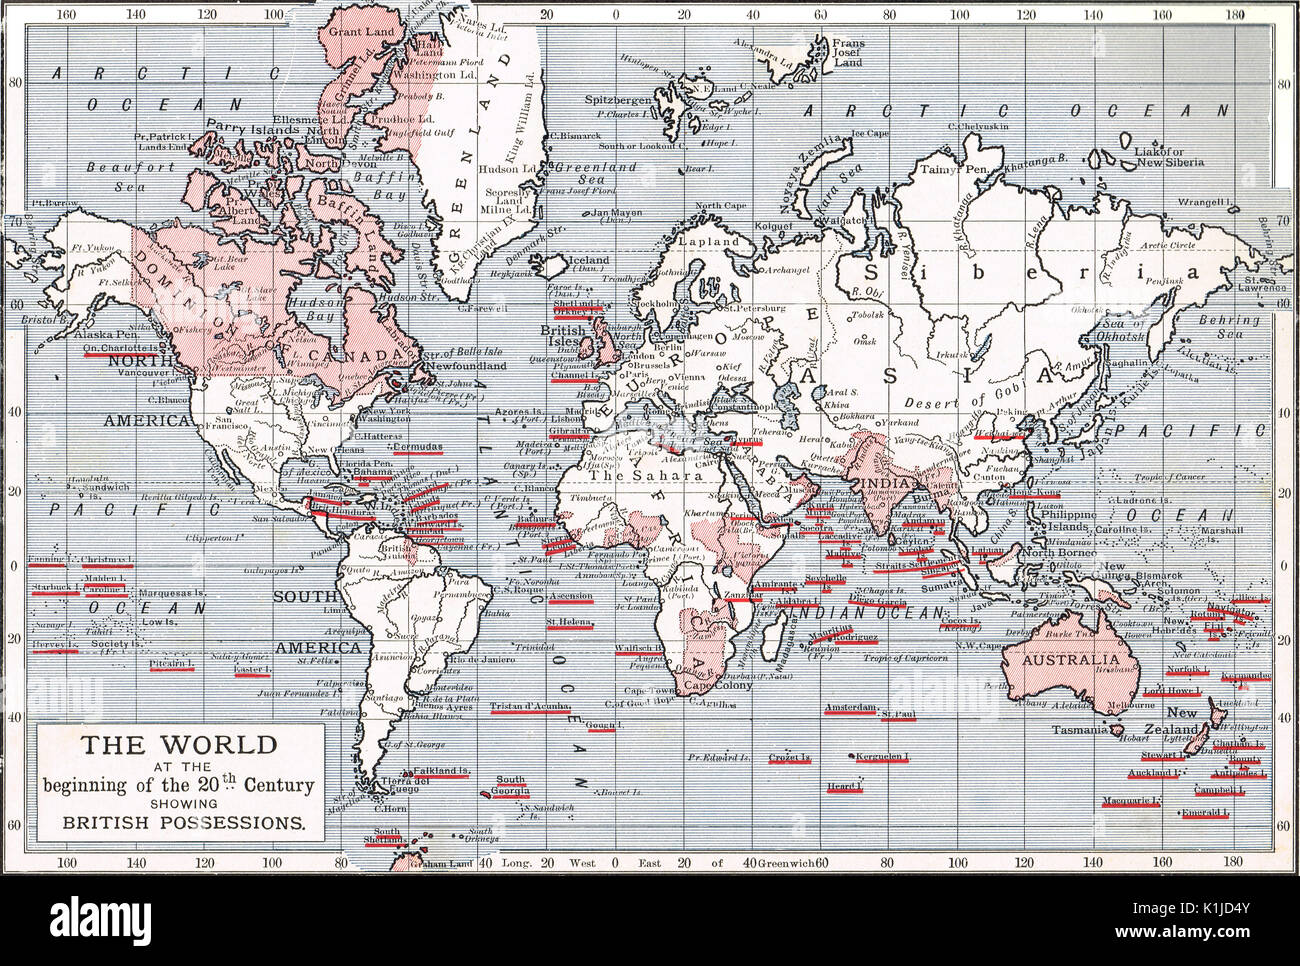 Weltkarte mit britischen Besitzungen zu Beginn des 20. Jahrhunderts Stockfoto